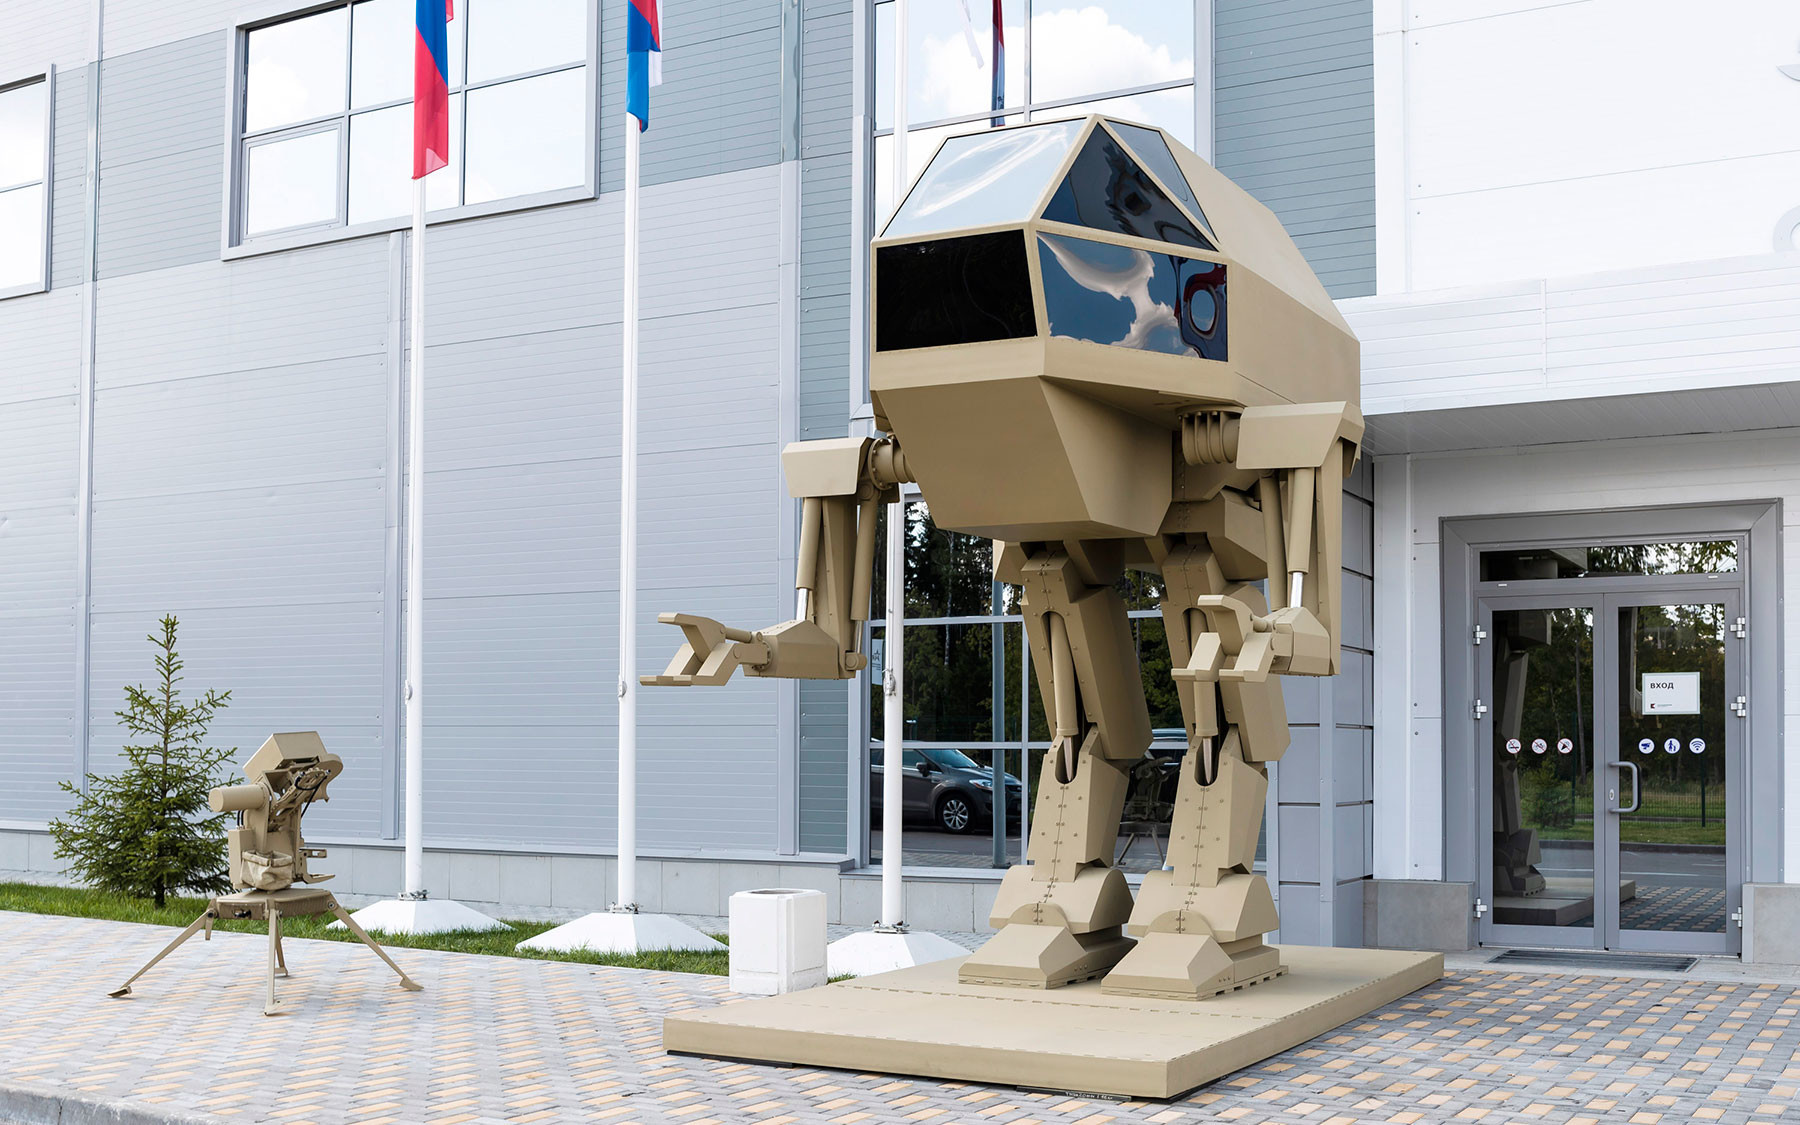 Управляемый прямоходящий робот с рабочим названием "Игорёк" весом 4,5 т, разработанный концерном "Калашников", на выставке "Армия России — завтра" в рамках IV Международного военно-технического форума "Армия-2018" в Кубинке. Фото: © КАЛАШНИКОВ МЕДИА